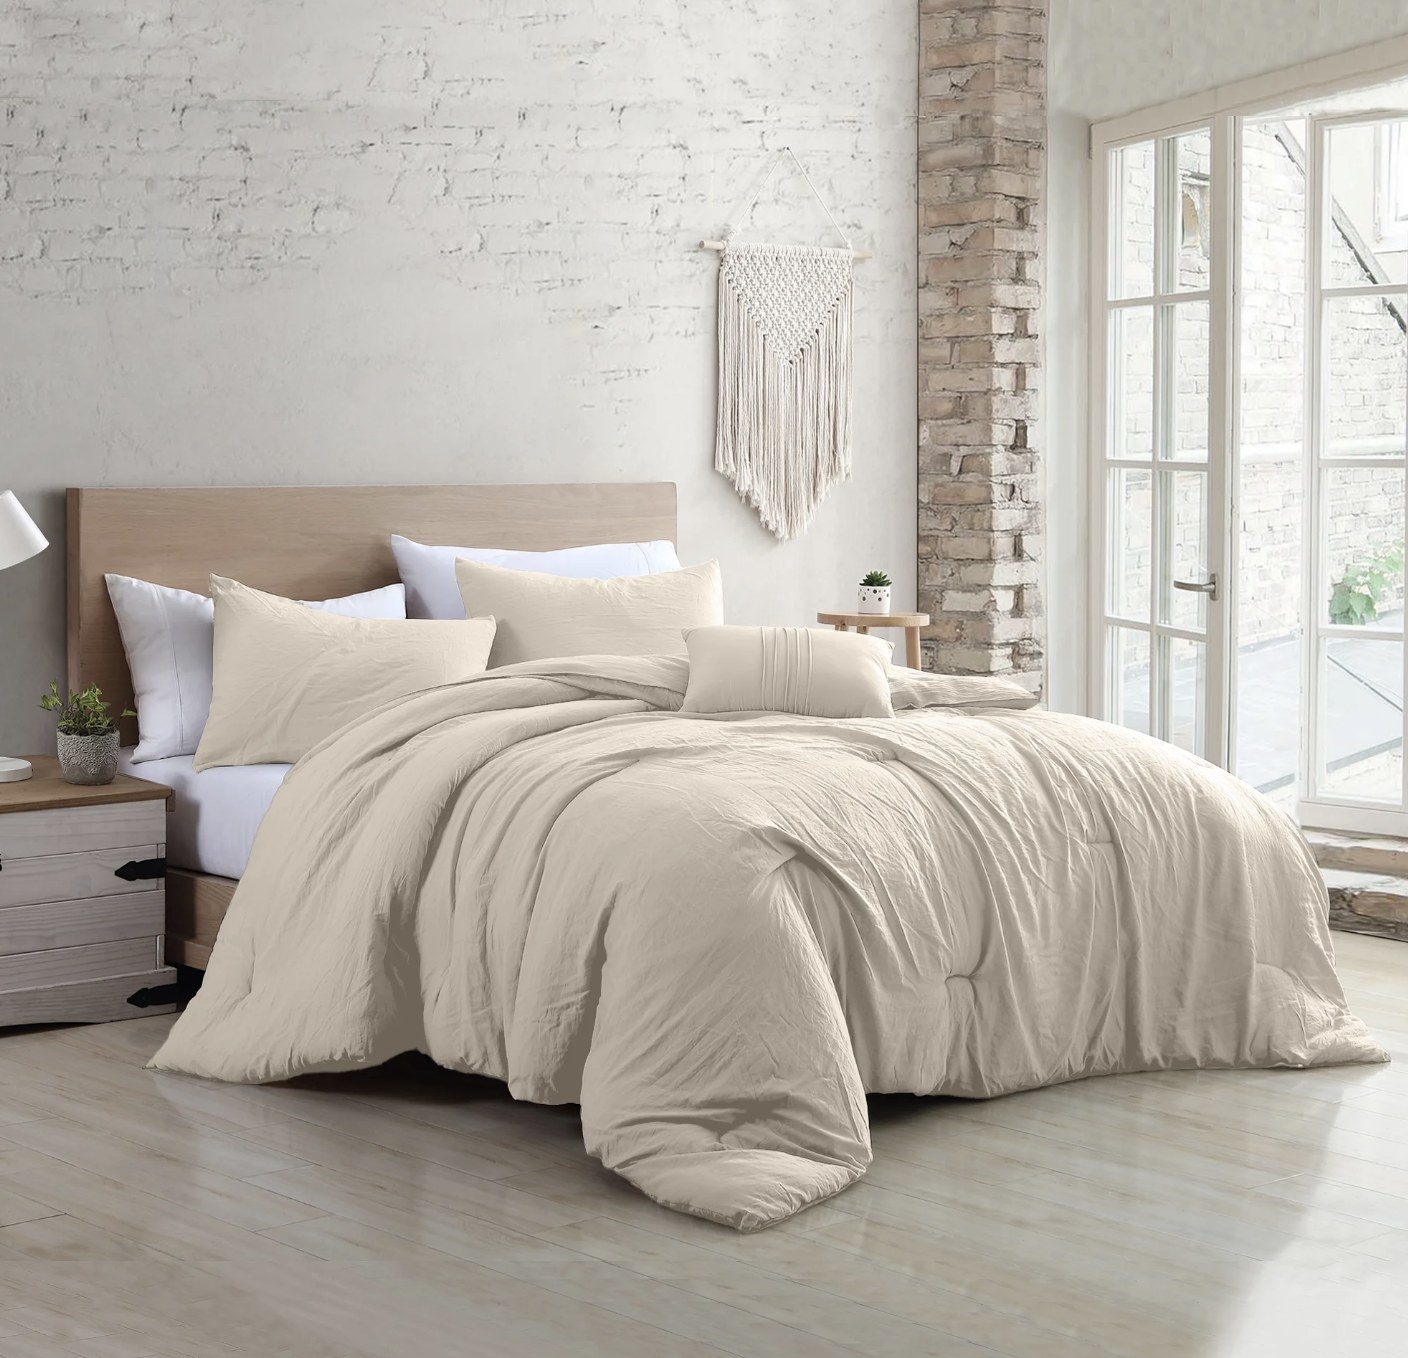 A beige comforter set